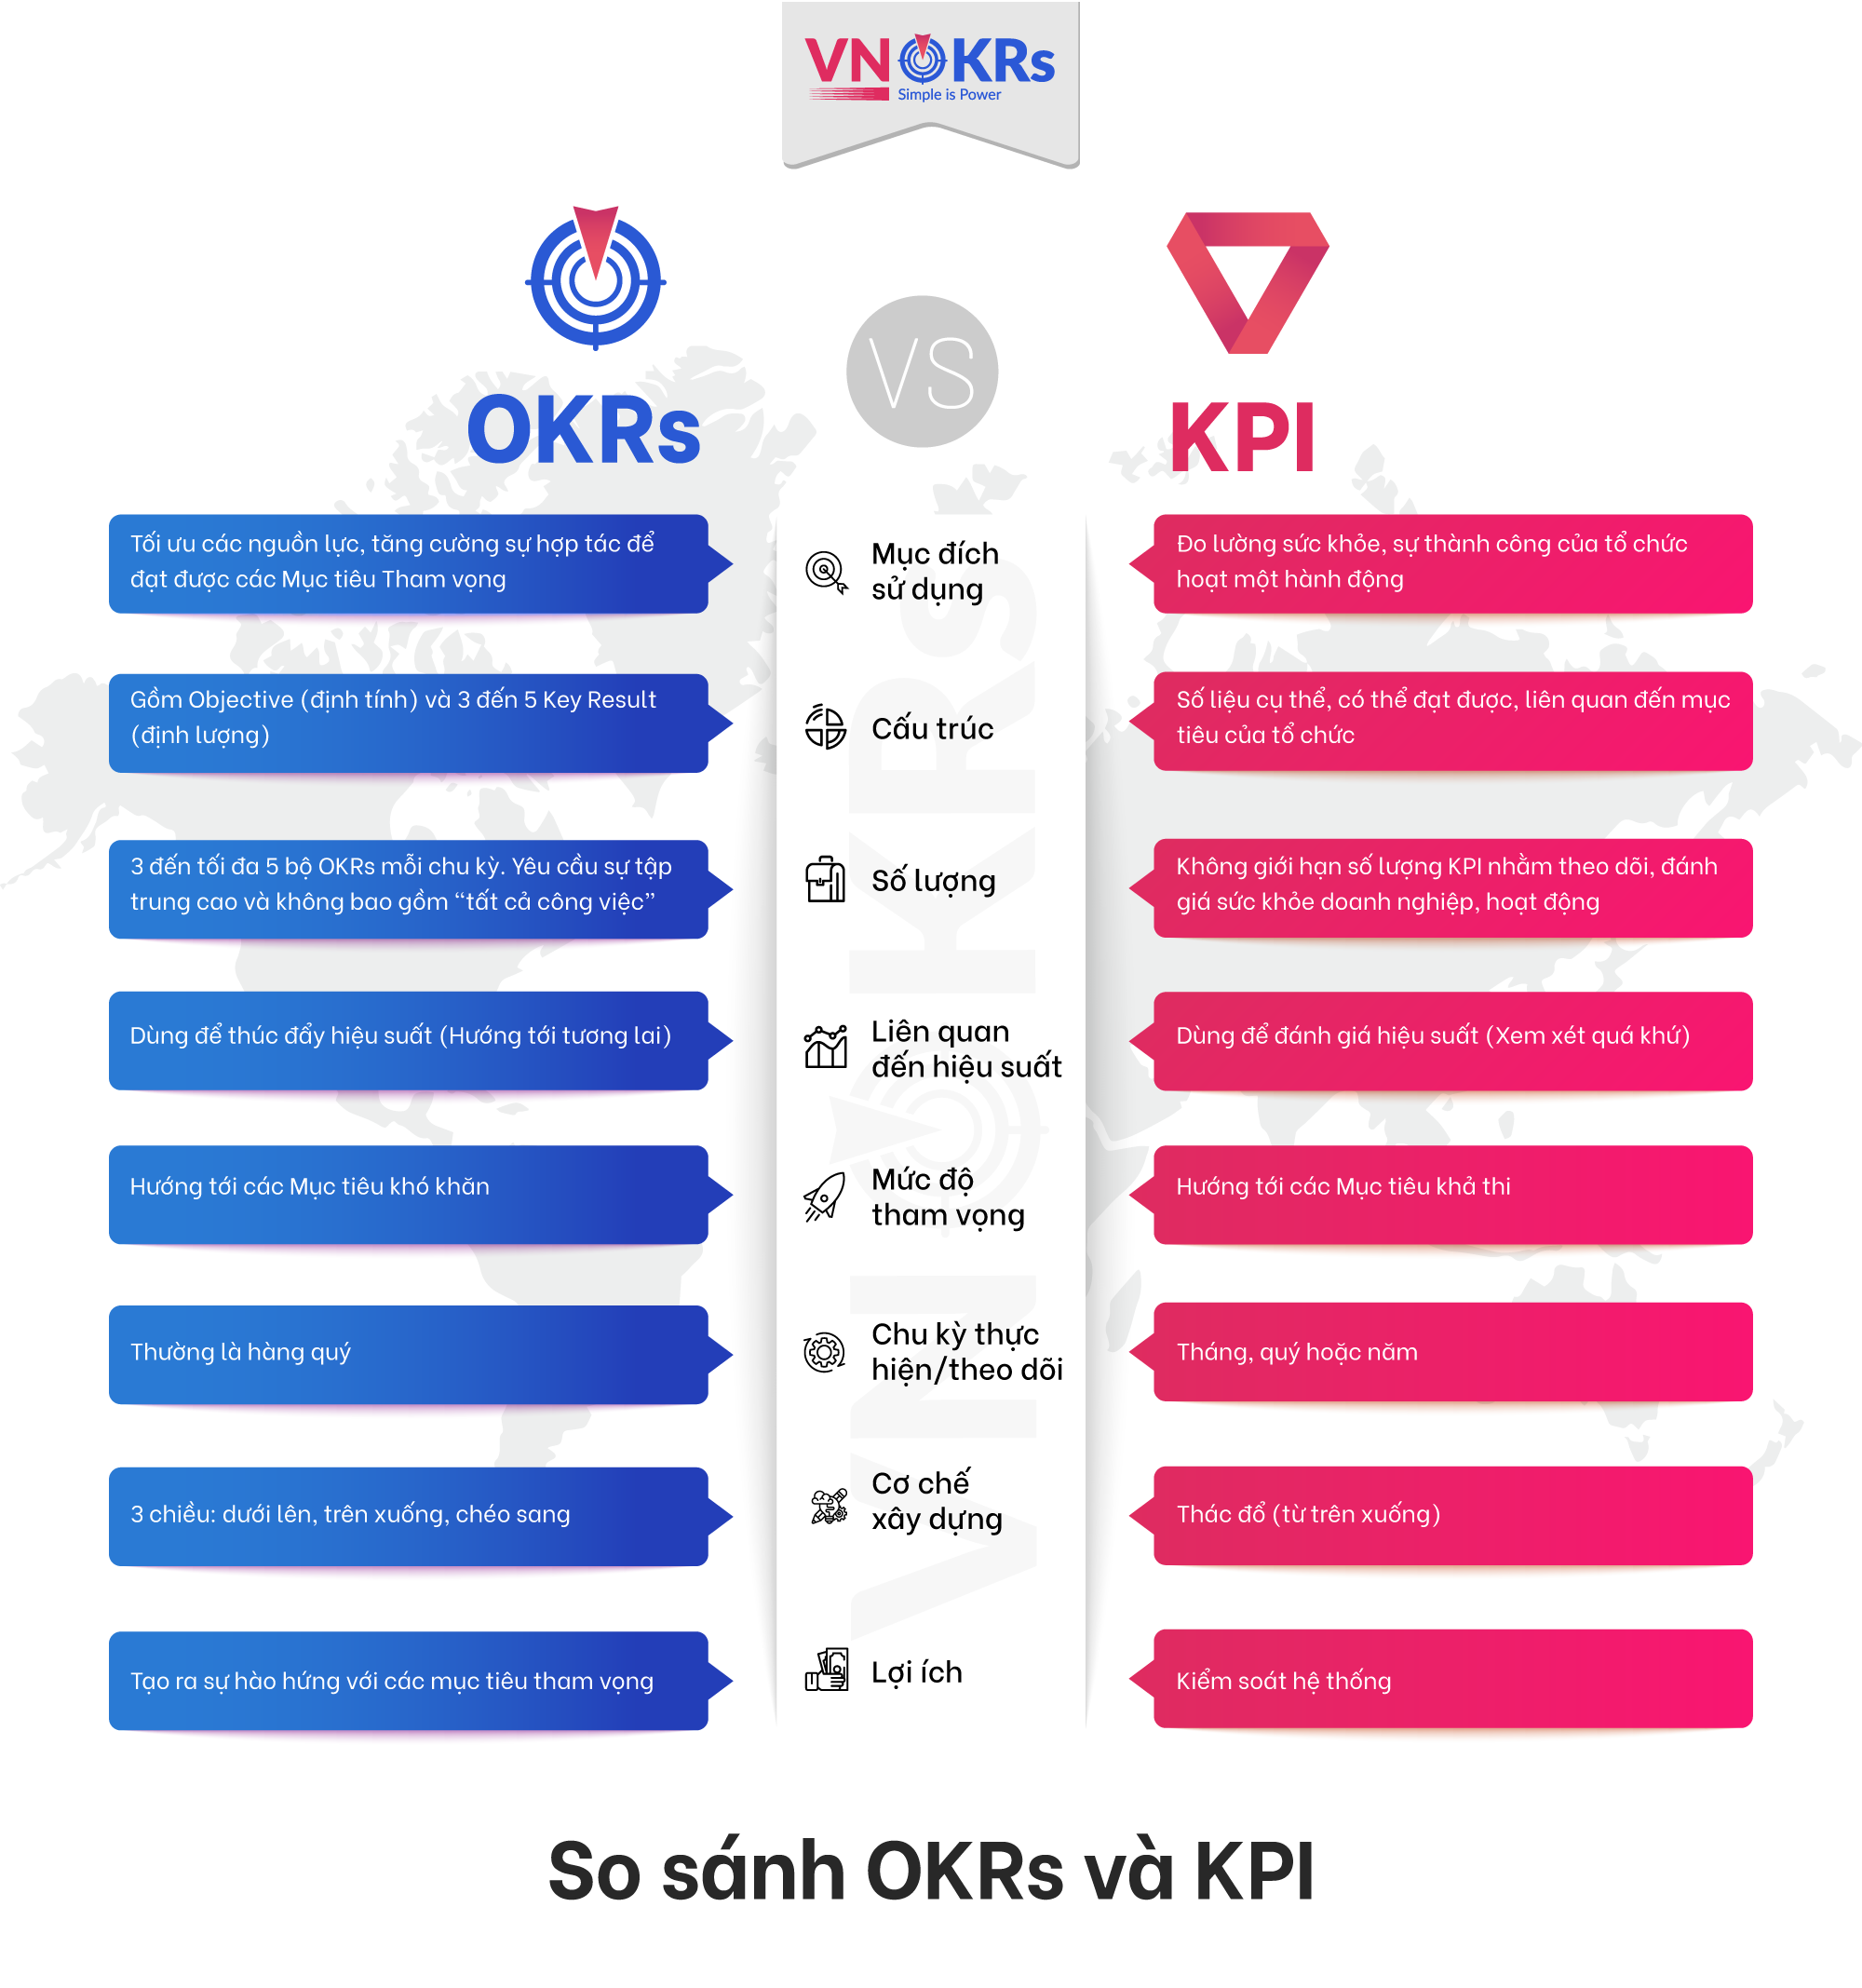 So sánh OKRs và KPI